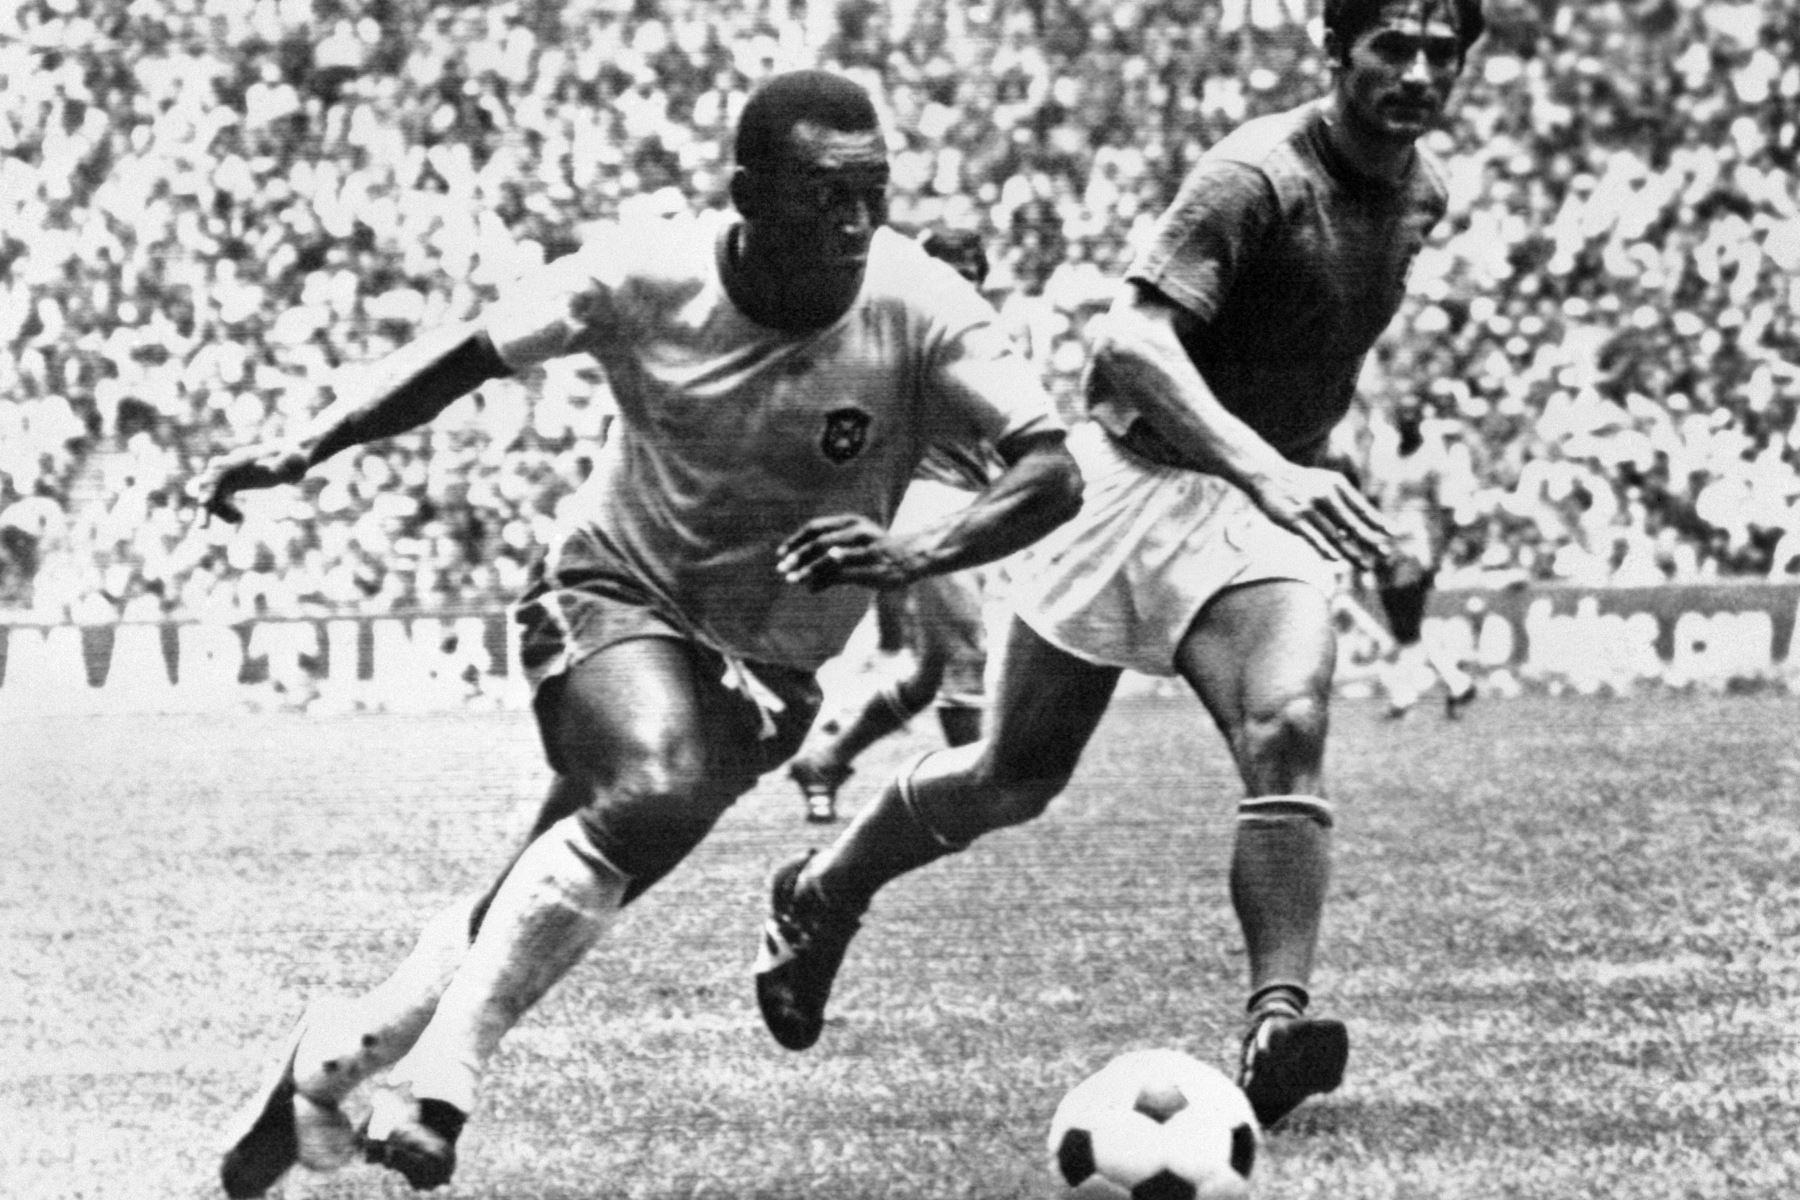 El centrocampista brasileño Pelé regatea al defensor italiano Tarcisio Burgnich durante la final de la Copa del Mundo el 21 de junio de 1970 en la Ciudad de México. Pelé anotó el primer gol de su equipo cuando Brasil venció a Italia 4-1 para capturar su tercer título mundial después de 1958 (en Suecia) y 1962 (en Chile). Foto: AFP